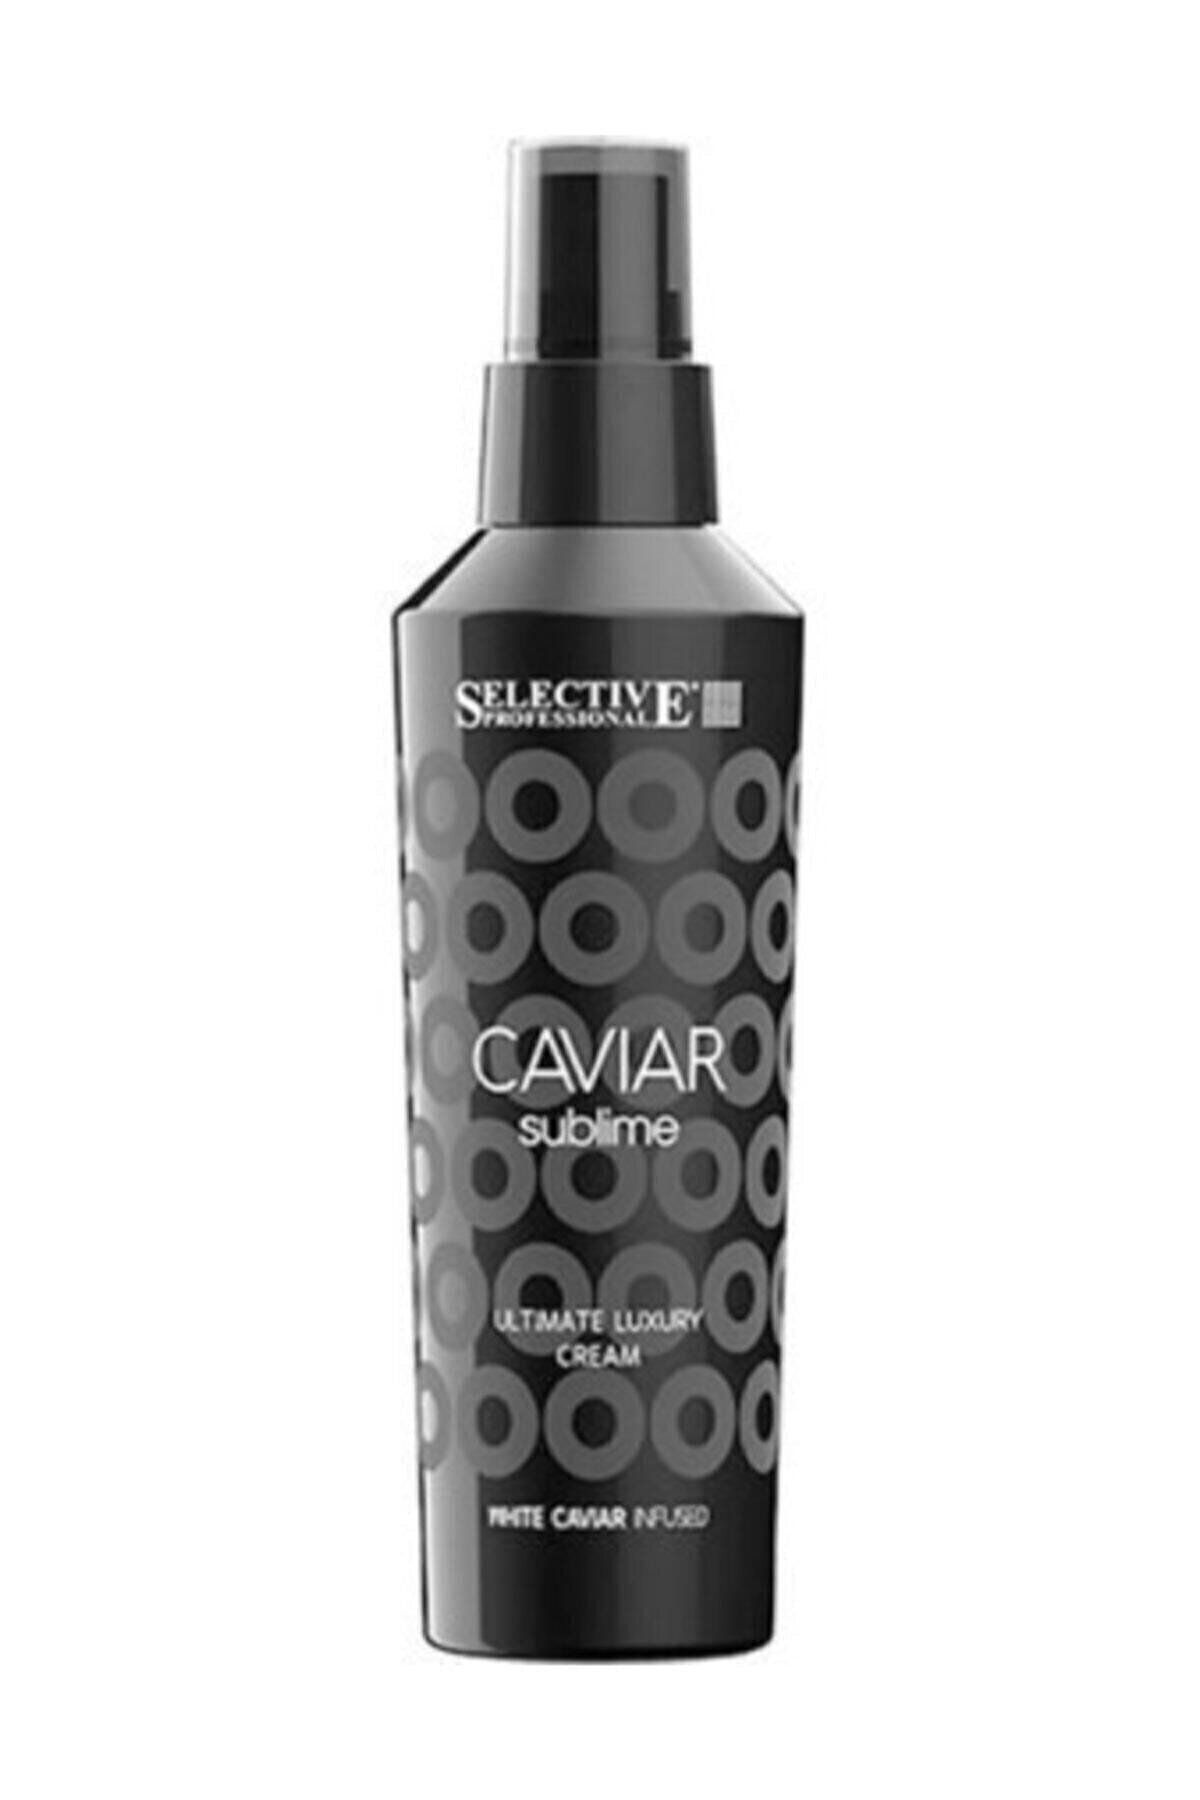 Selective Caviar Sublime Ultimate Luxury Cream Durulanmayan Alyaonlıne562...